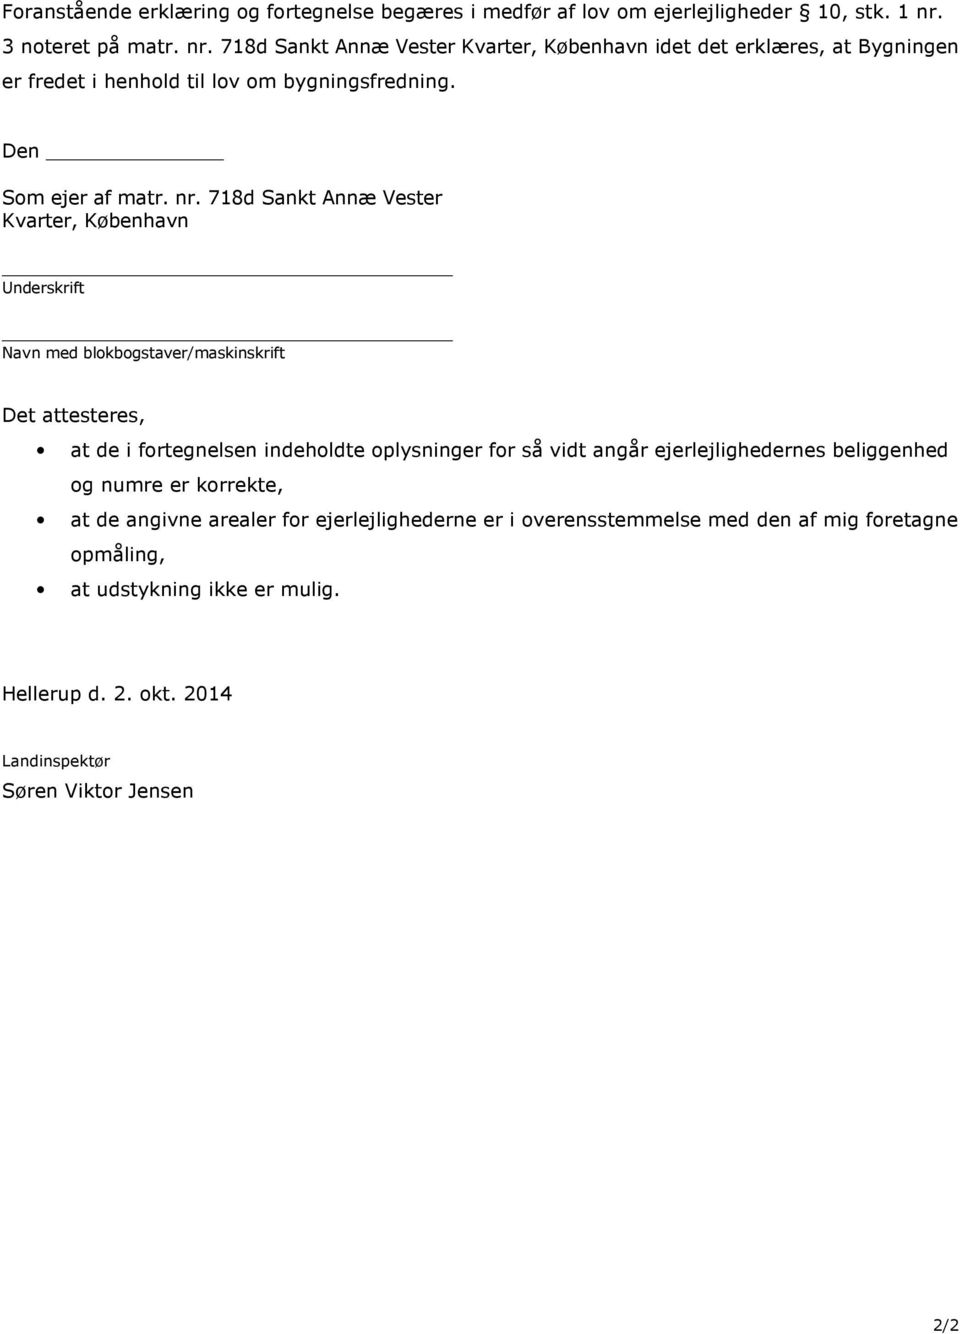 Anmeldelse og fortegnelse over ejerlejligheder i ejendommen matr. nr. 718a  Sankt Annæ Vester Kvarter, København - PDF Gratis download